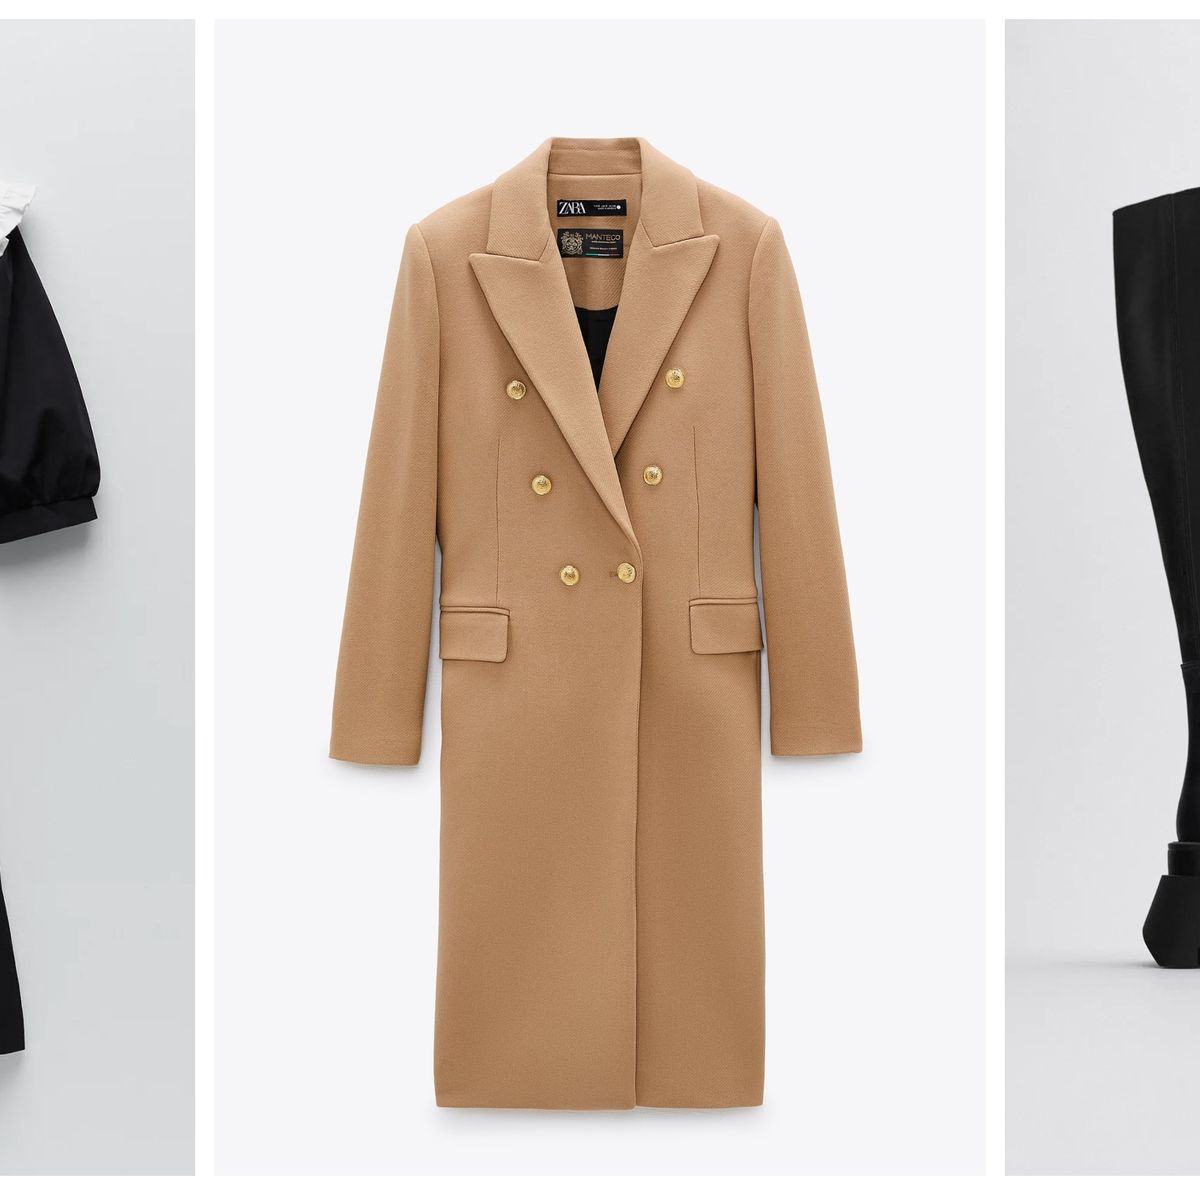 Rebajas de Zara: las 25 prendas y accesorios que merece la pena comprar